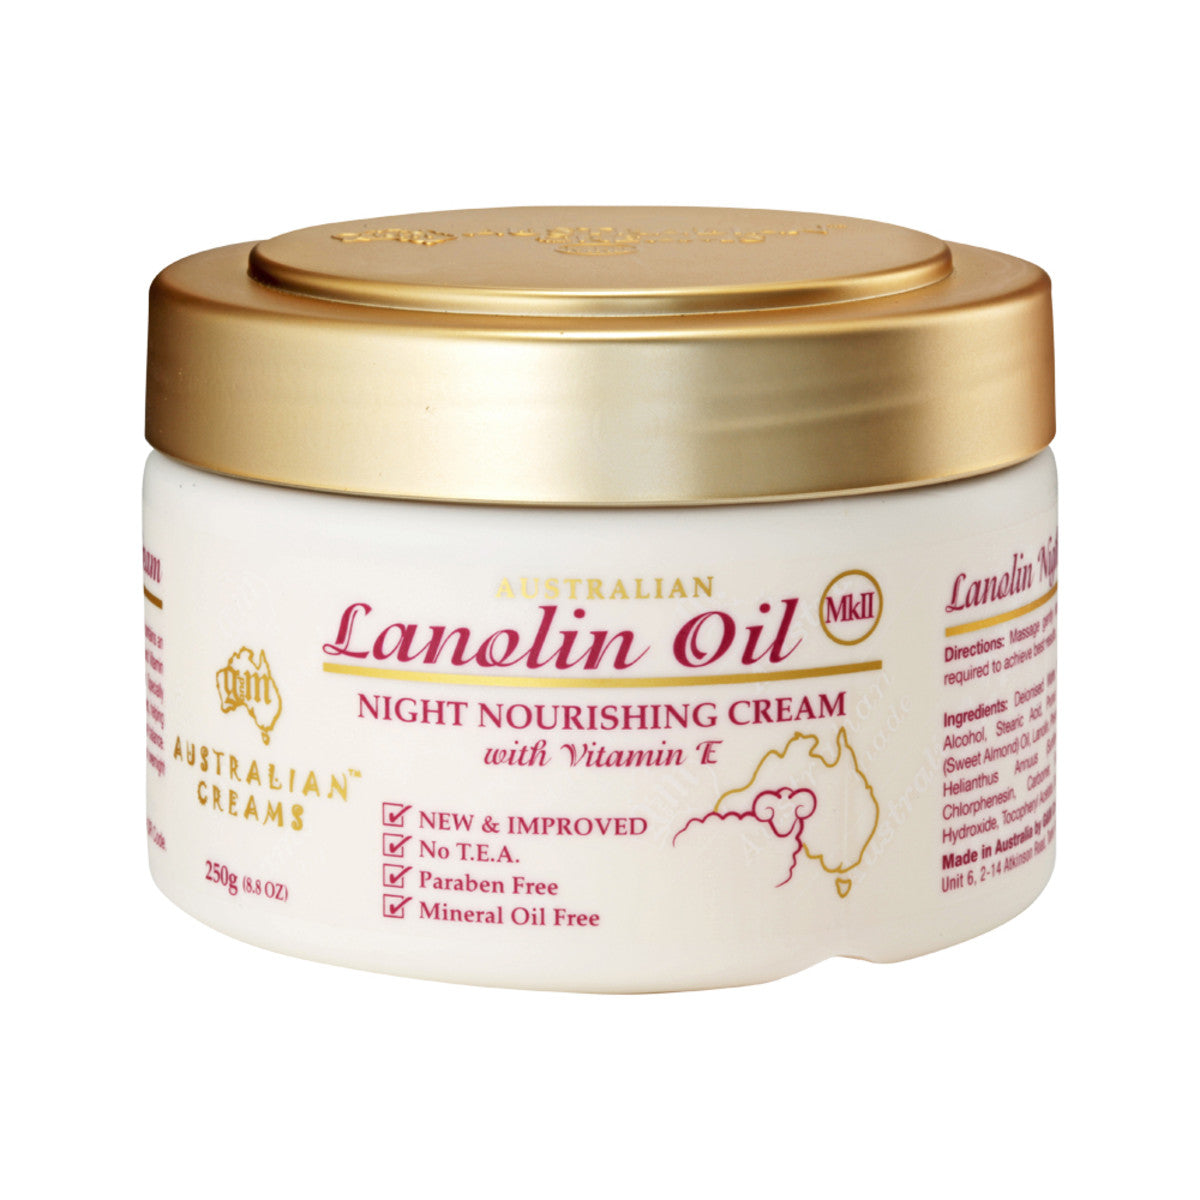 Australian Creams - MkII Cream Lanolin Oil Night